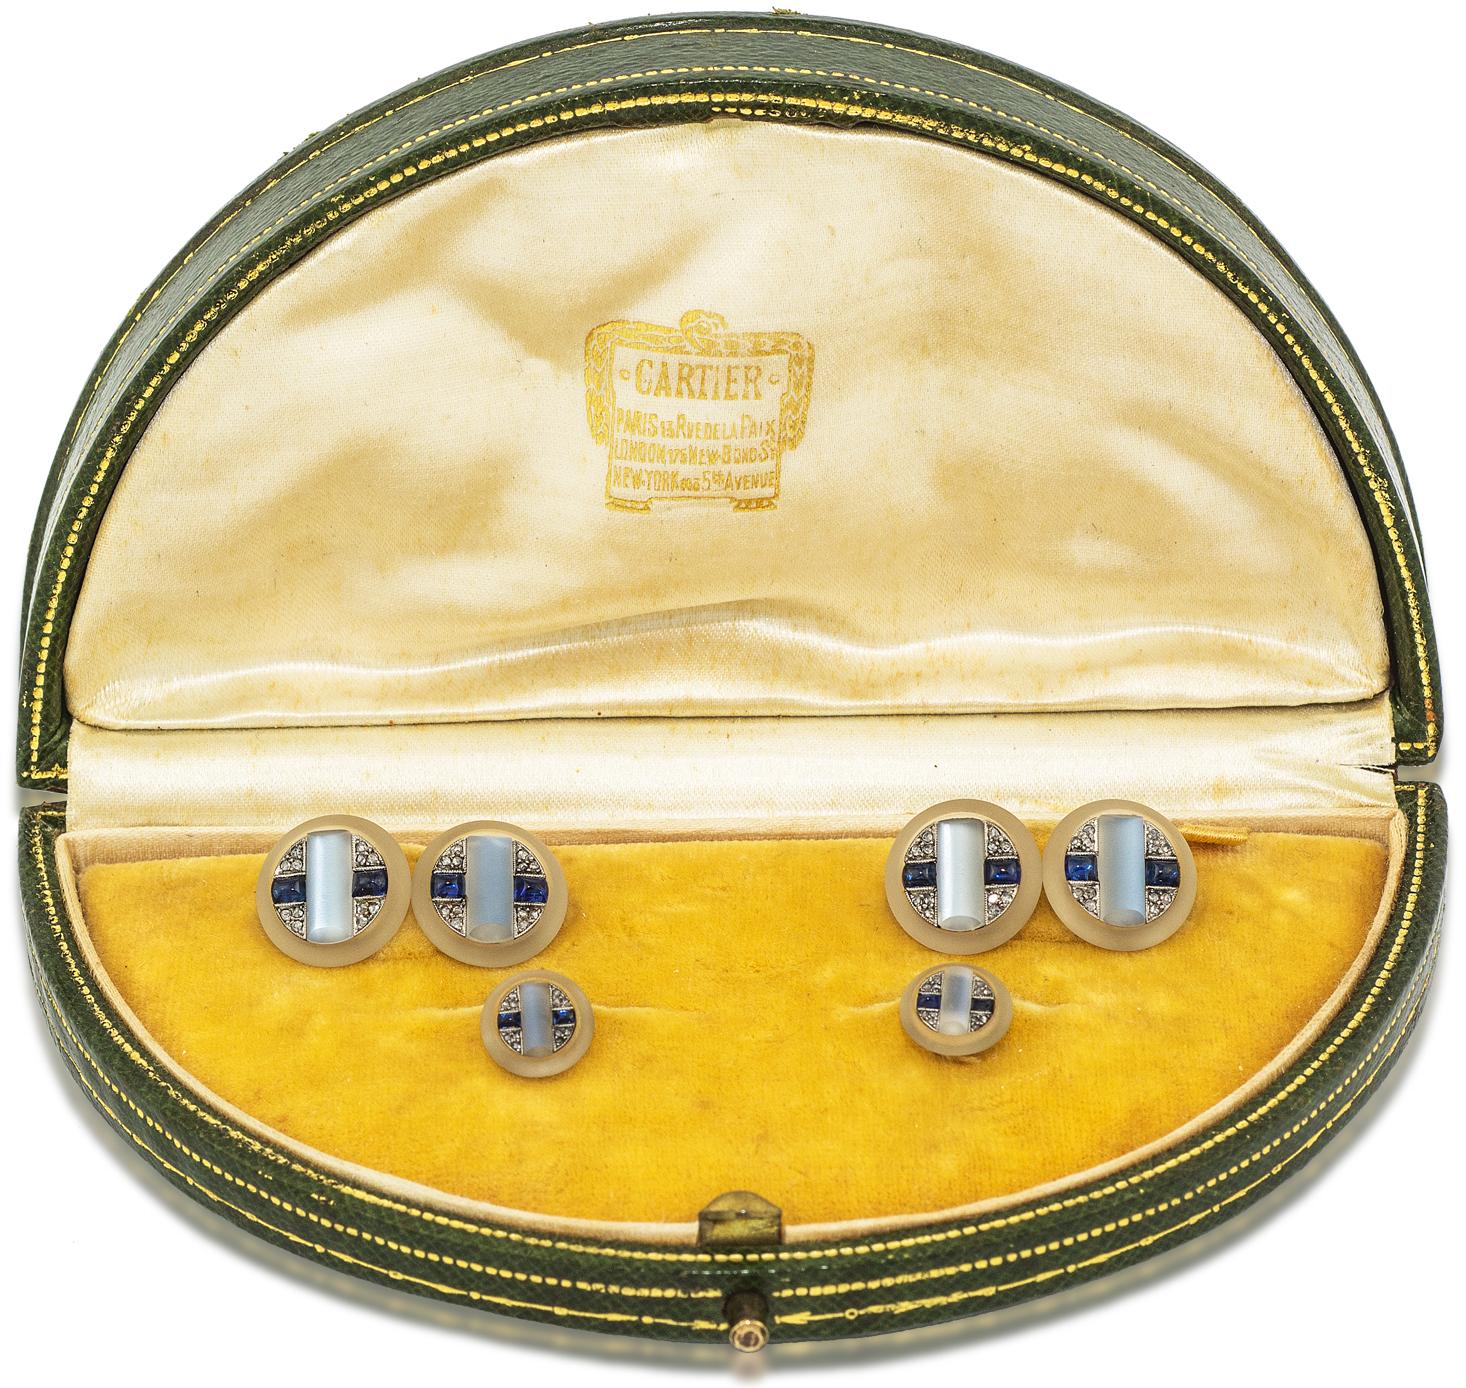 Manschettenknopf- und Ohrstecker-Set aus Mondstein, Saphir, Diamant und Bergkristall; Cartier, Paris; um 1920
mit originaler Cartier-Schachtel